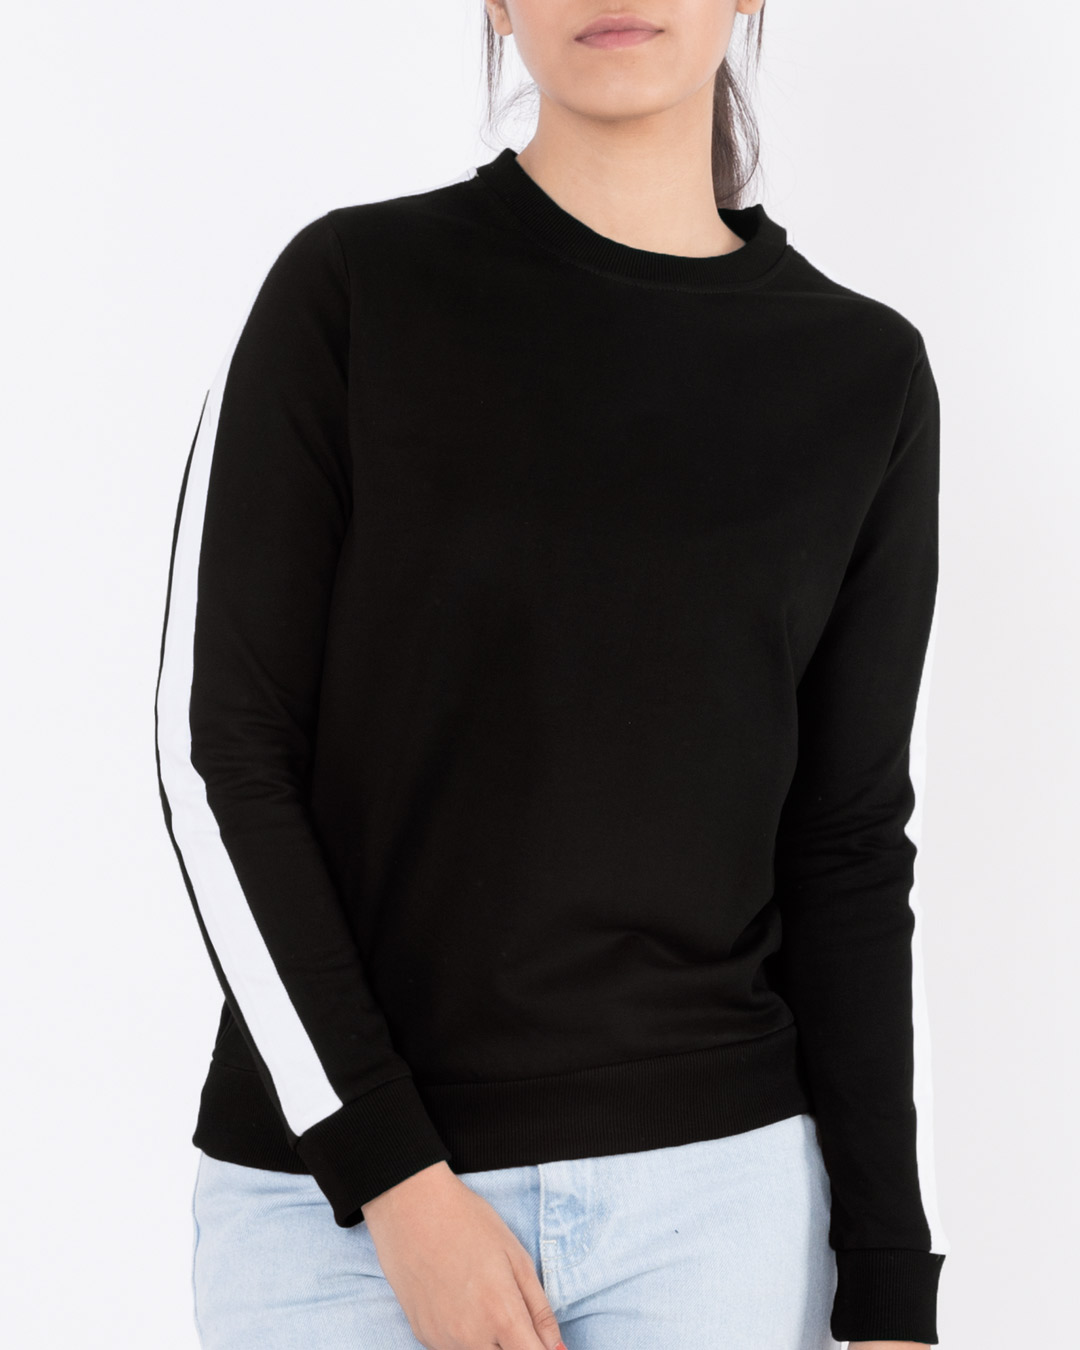 Buy Jet Black-White Fleece Sweater for Women black,white Online at Bewakoof